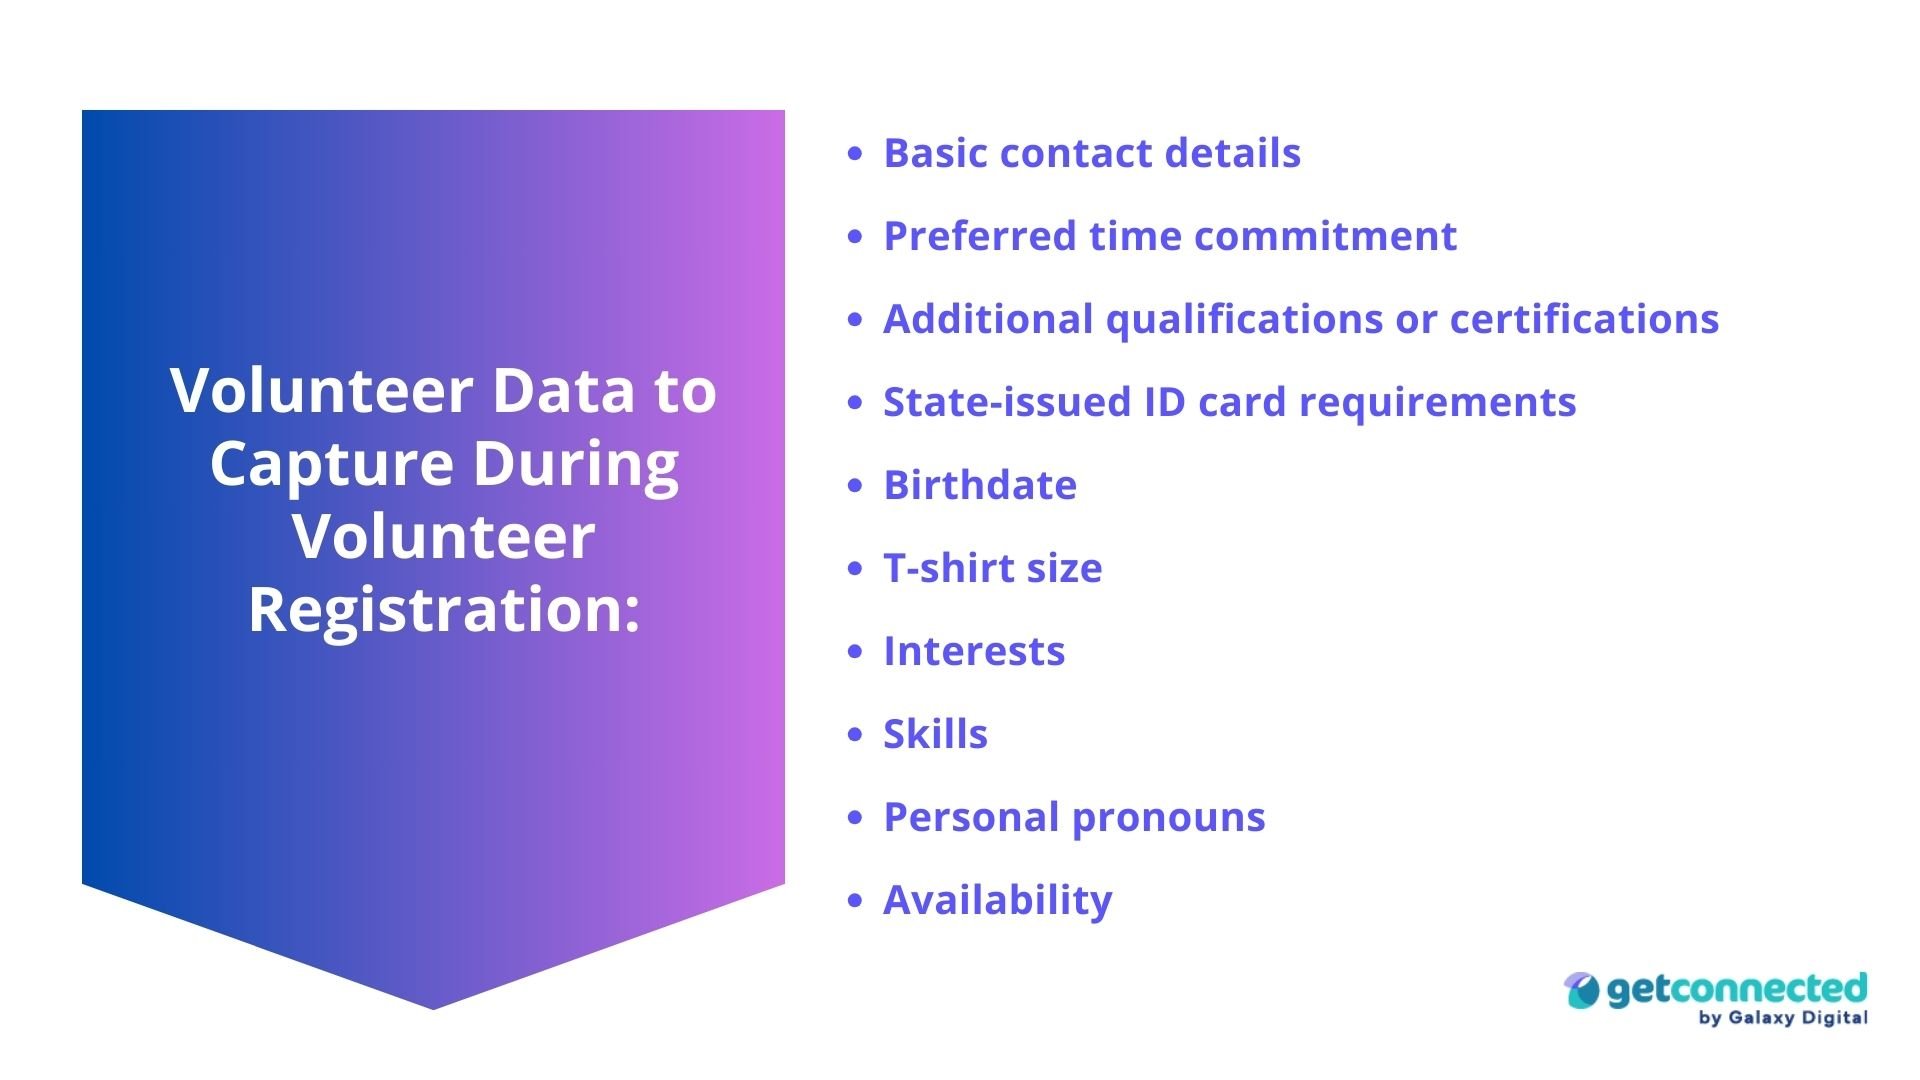 Volunteer Data to Capture During Volunteer Registration